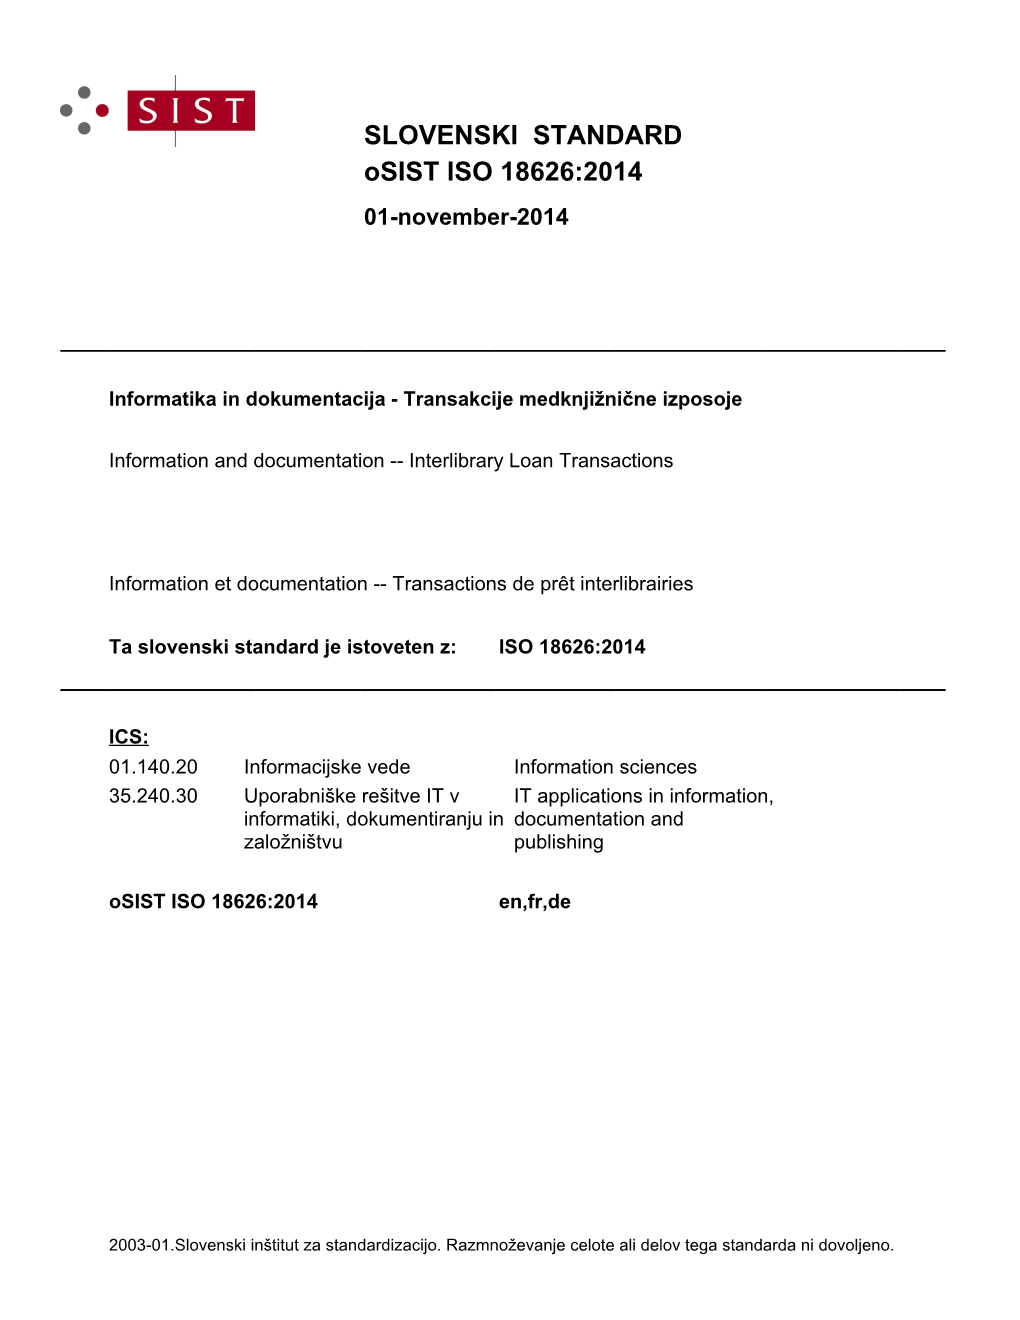 Osist ISO 18626:2014 SLOVENSKI STANDARD